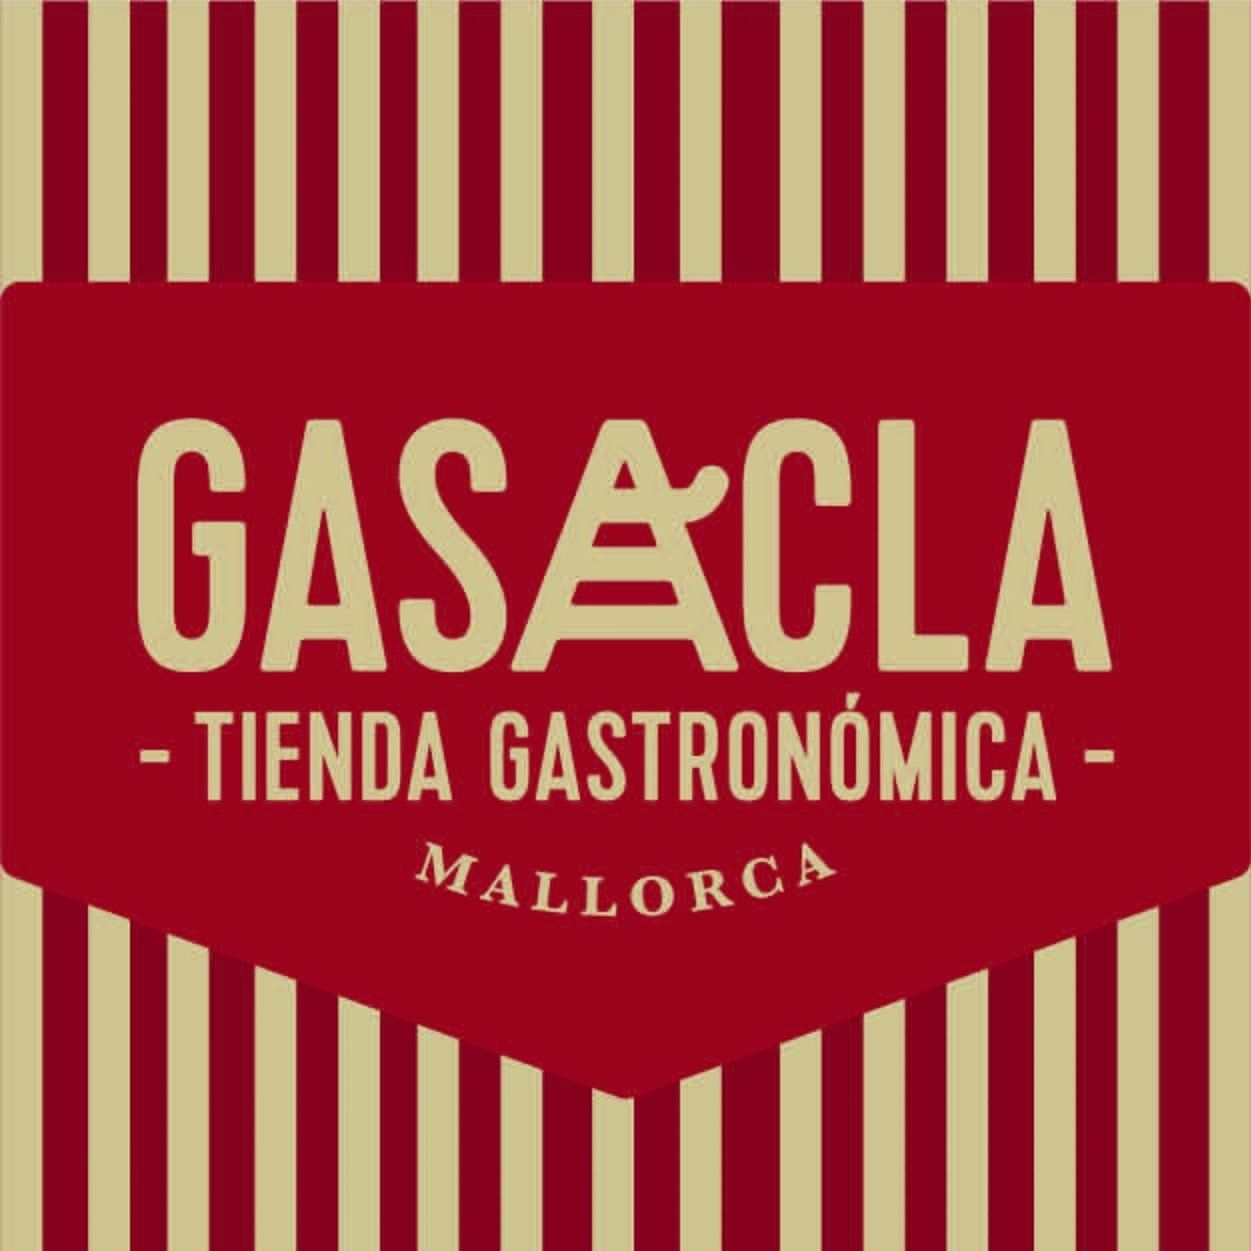 Gasacla Mallorca